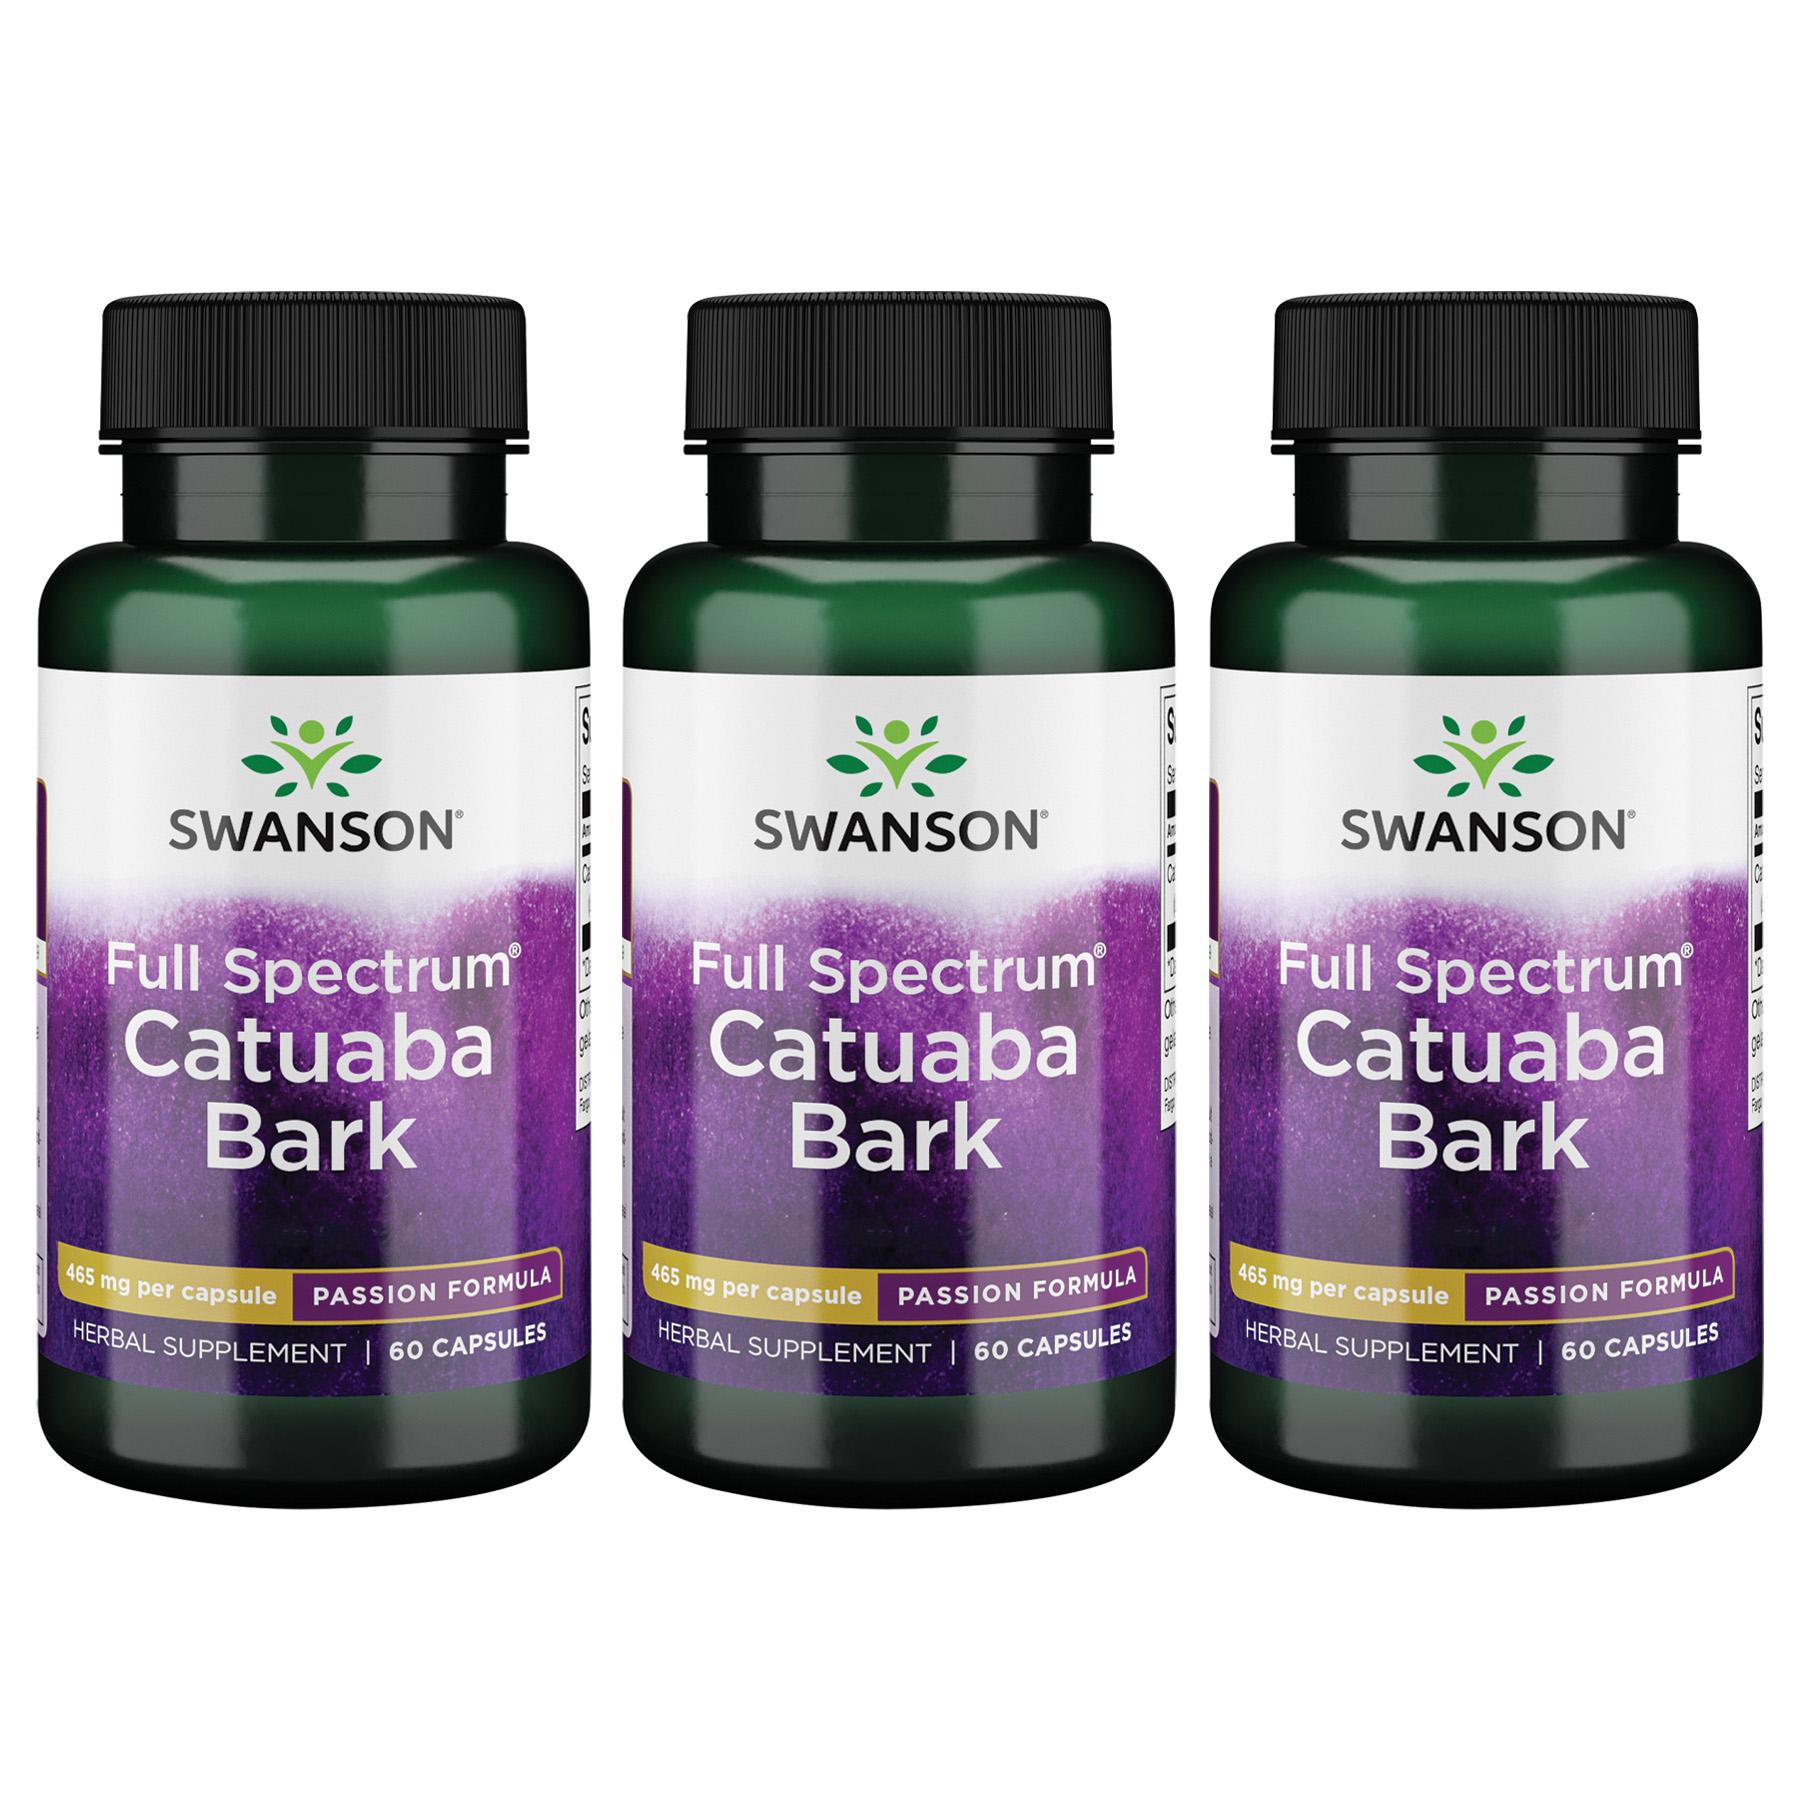 Swanson Premium Full Spectrum Catuaba Bark 3 Pack Vitamin 465 mg 60 Caps